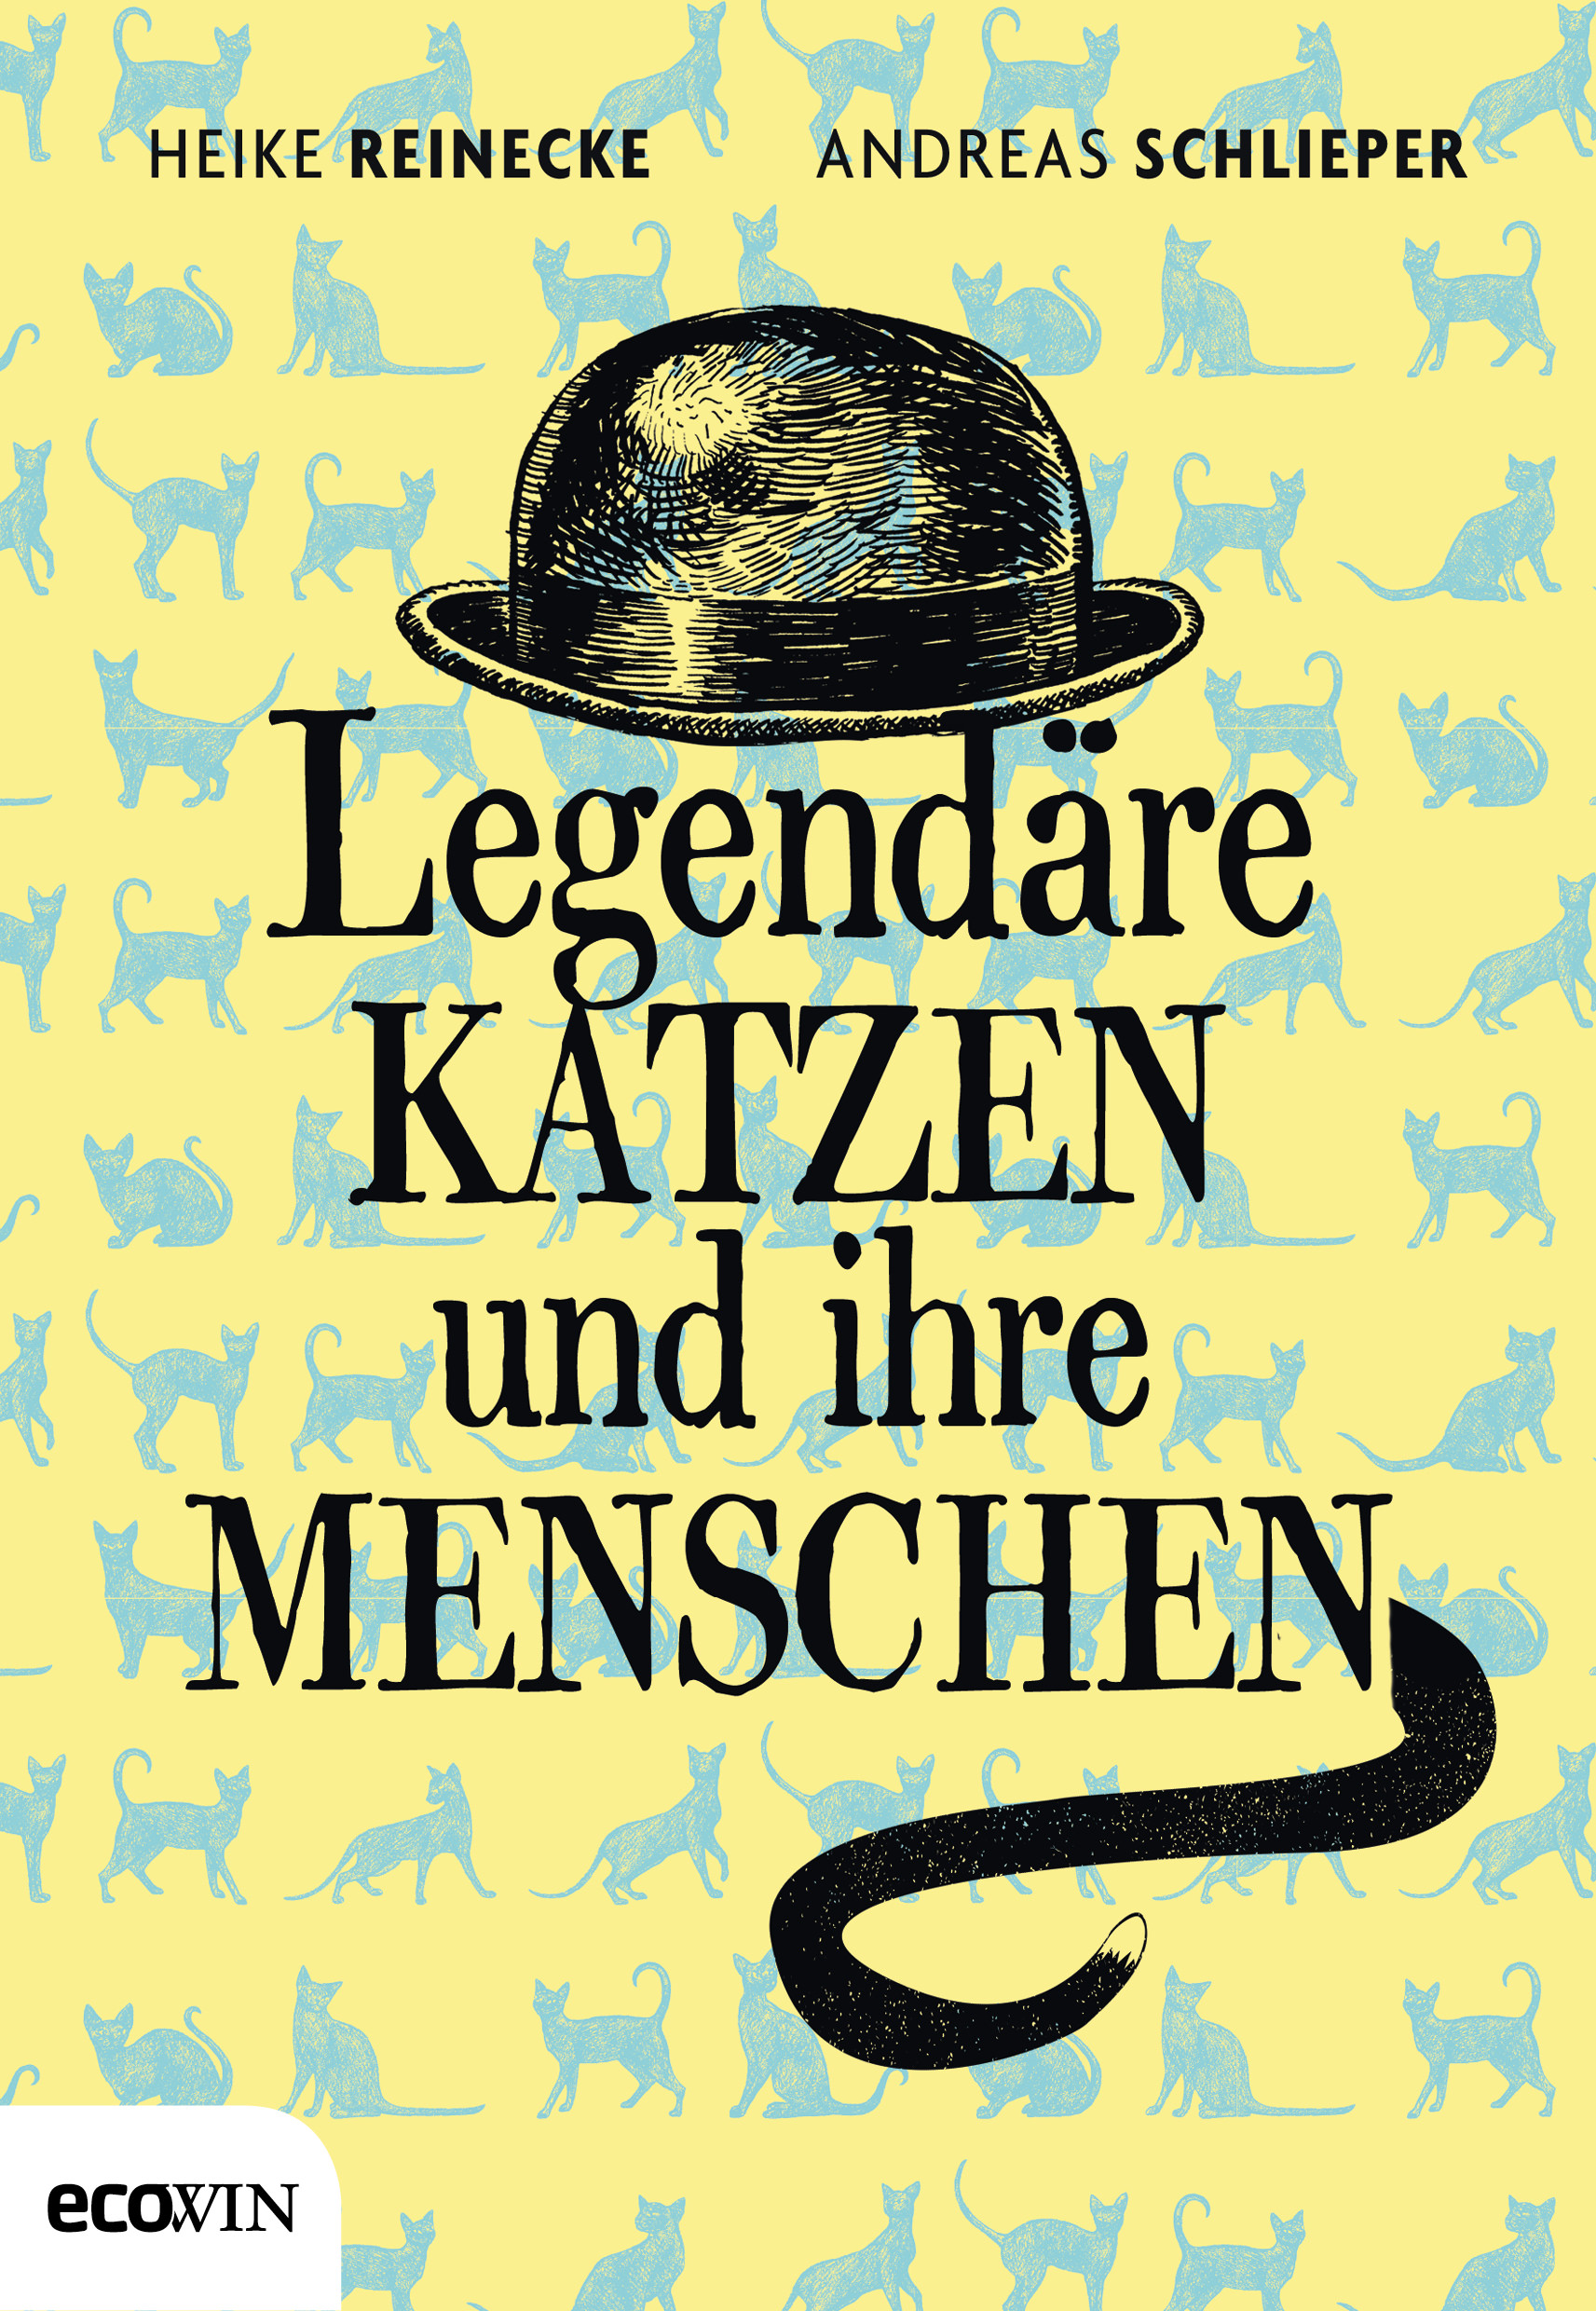 Heike Reinecke & Andreas Schlieper: Legendäre Katzen und ihre Menschen